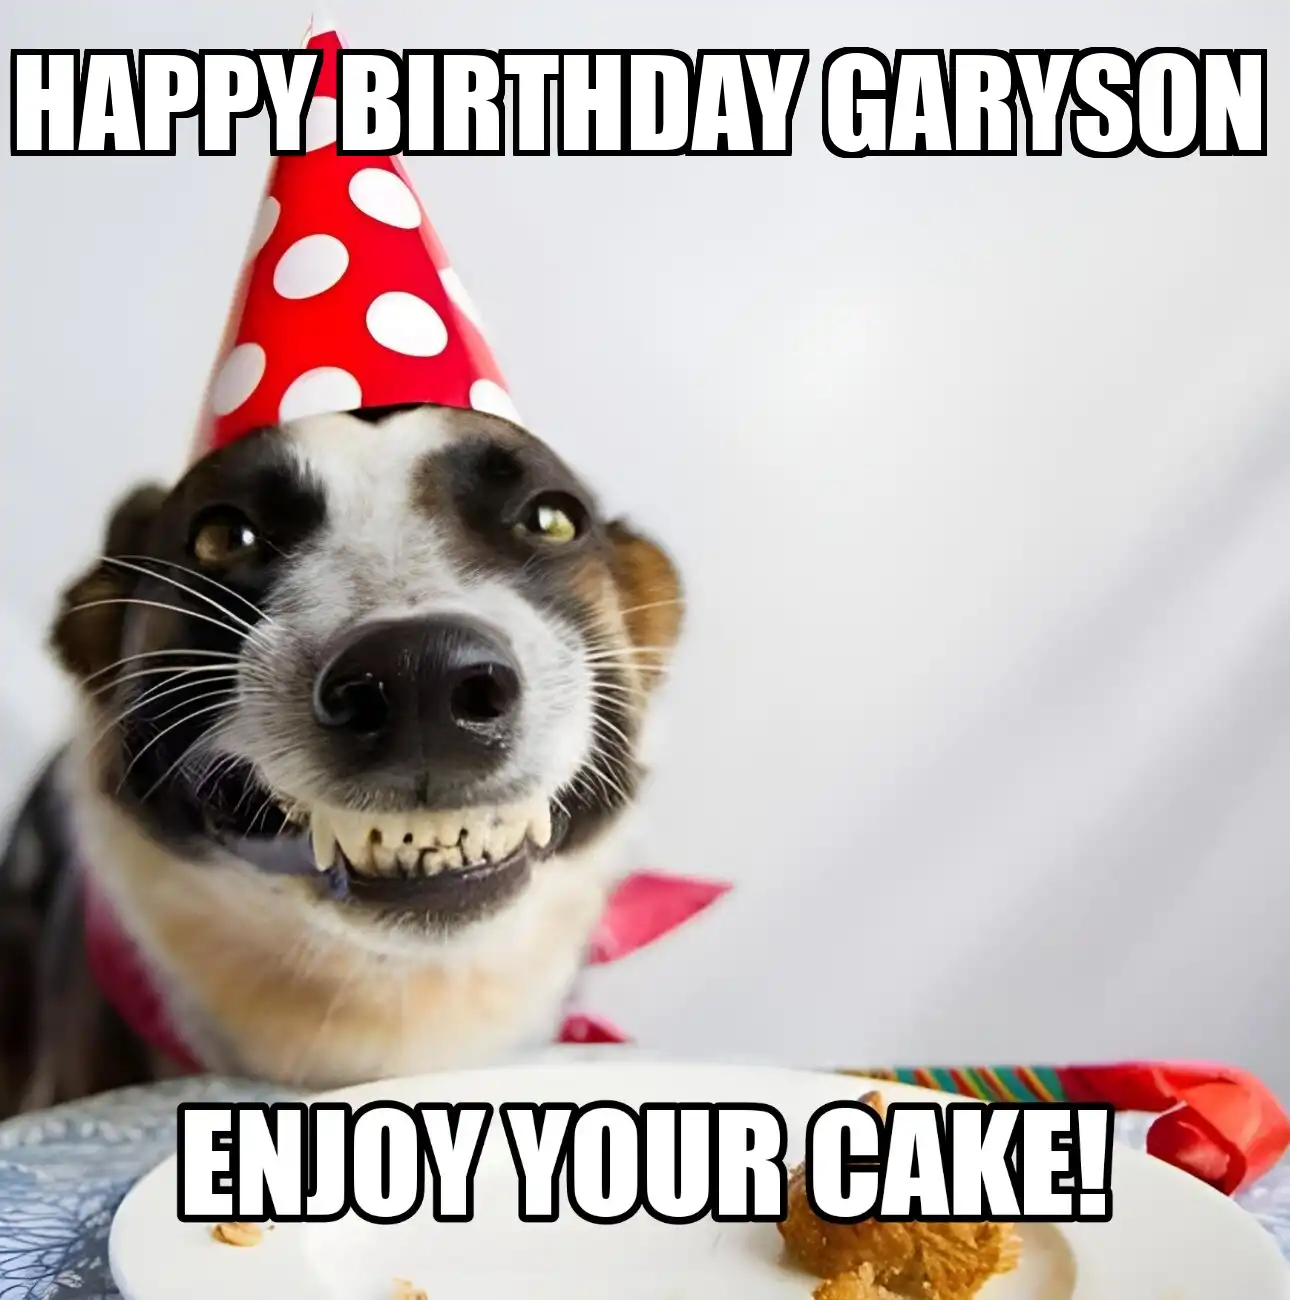 Happy Birthday Garyson Enjoy Your Cake Dog Meme